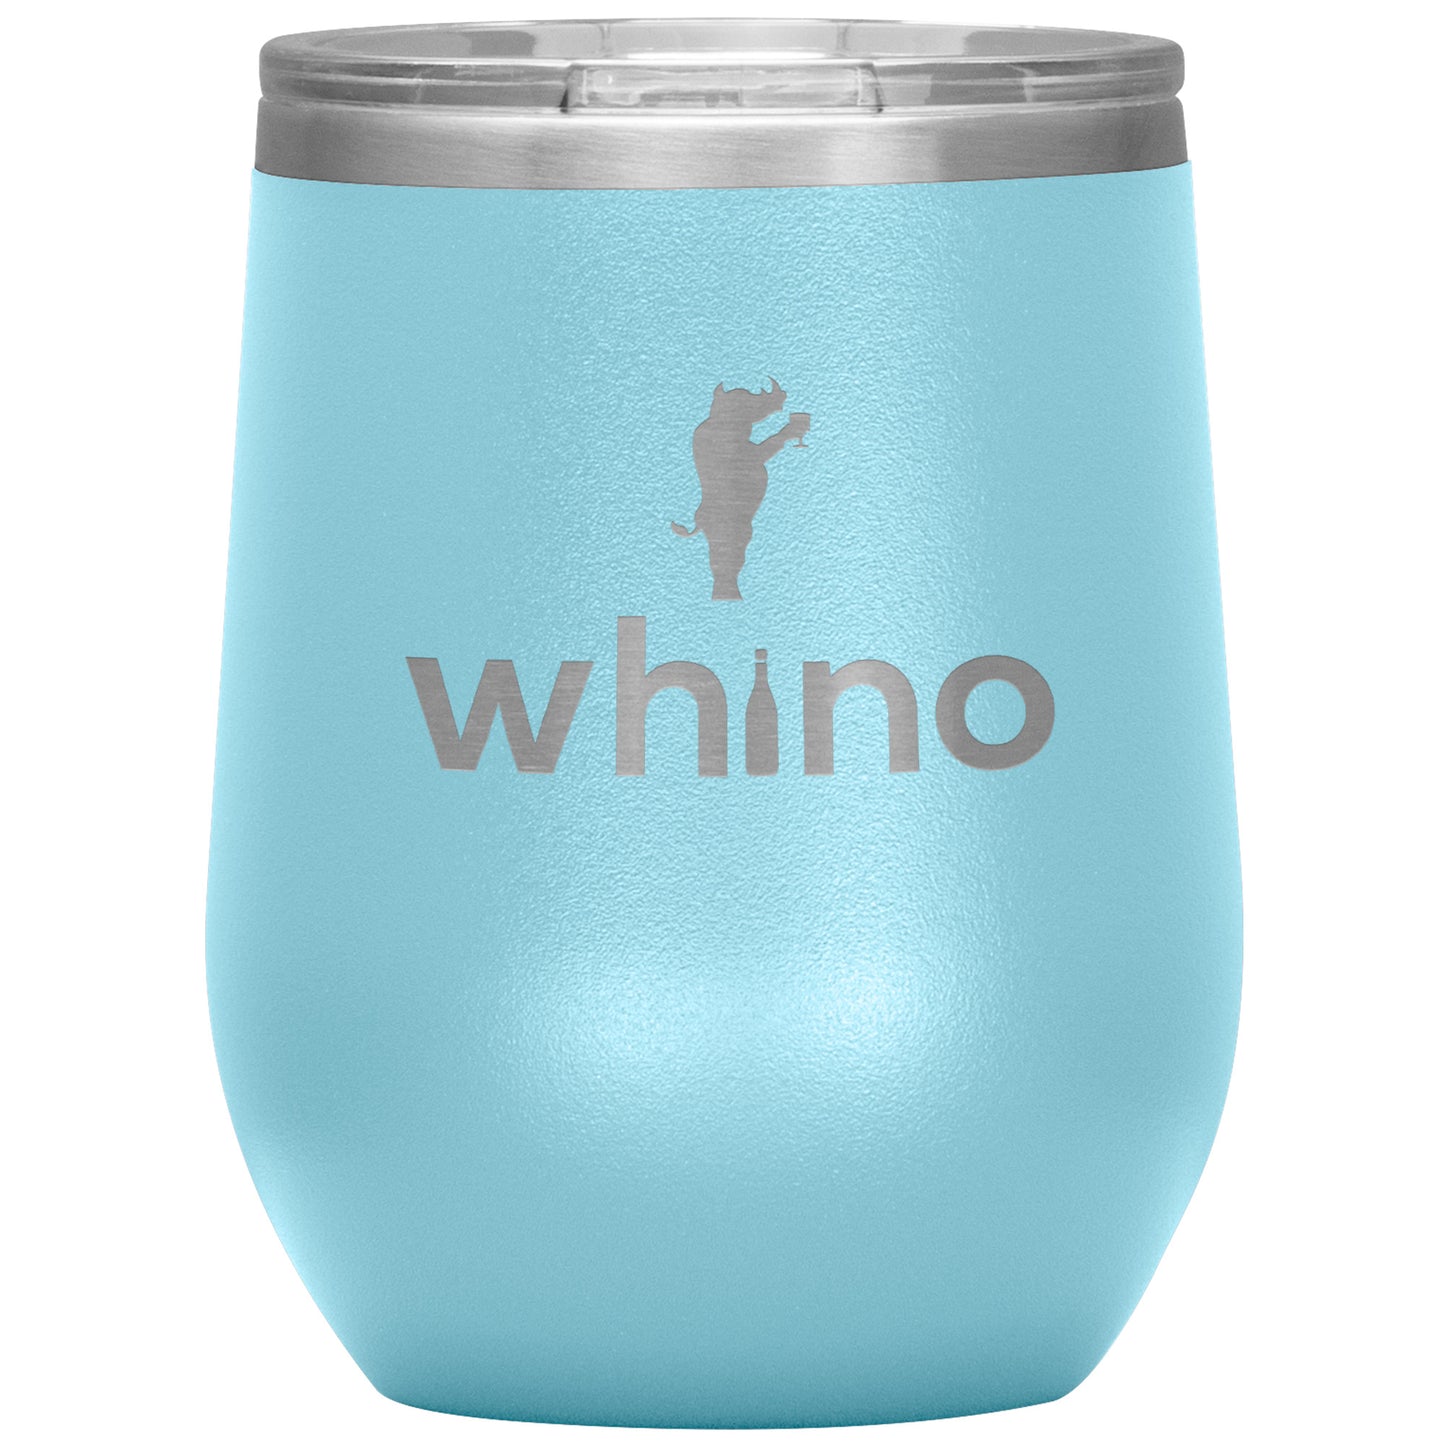 Whino Wine Tumbler